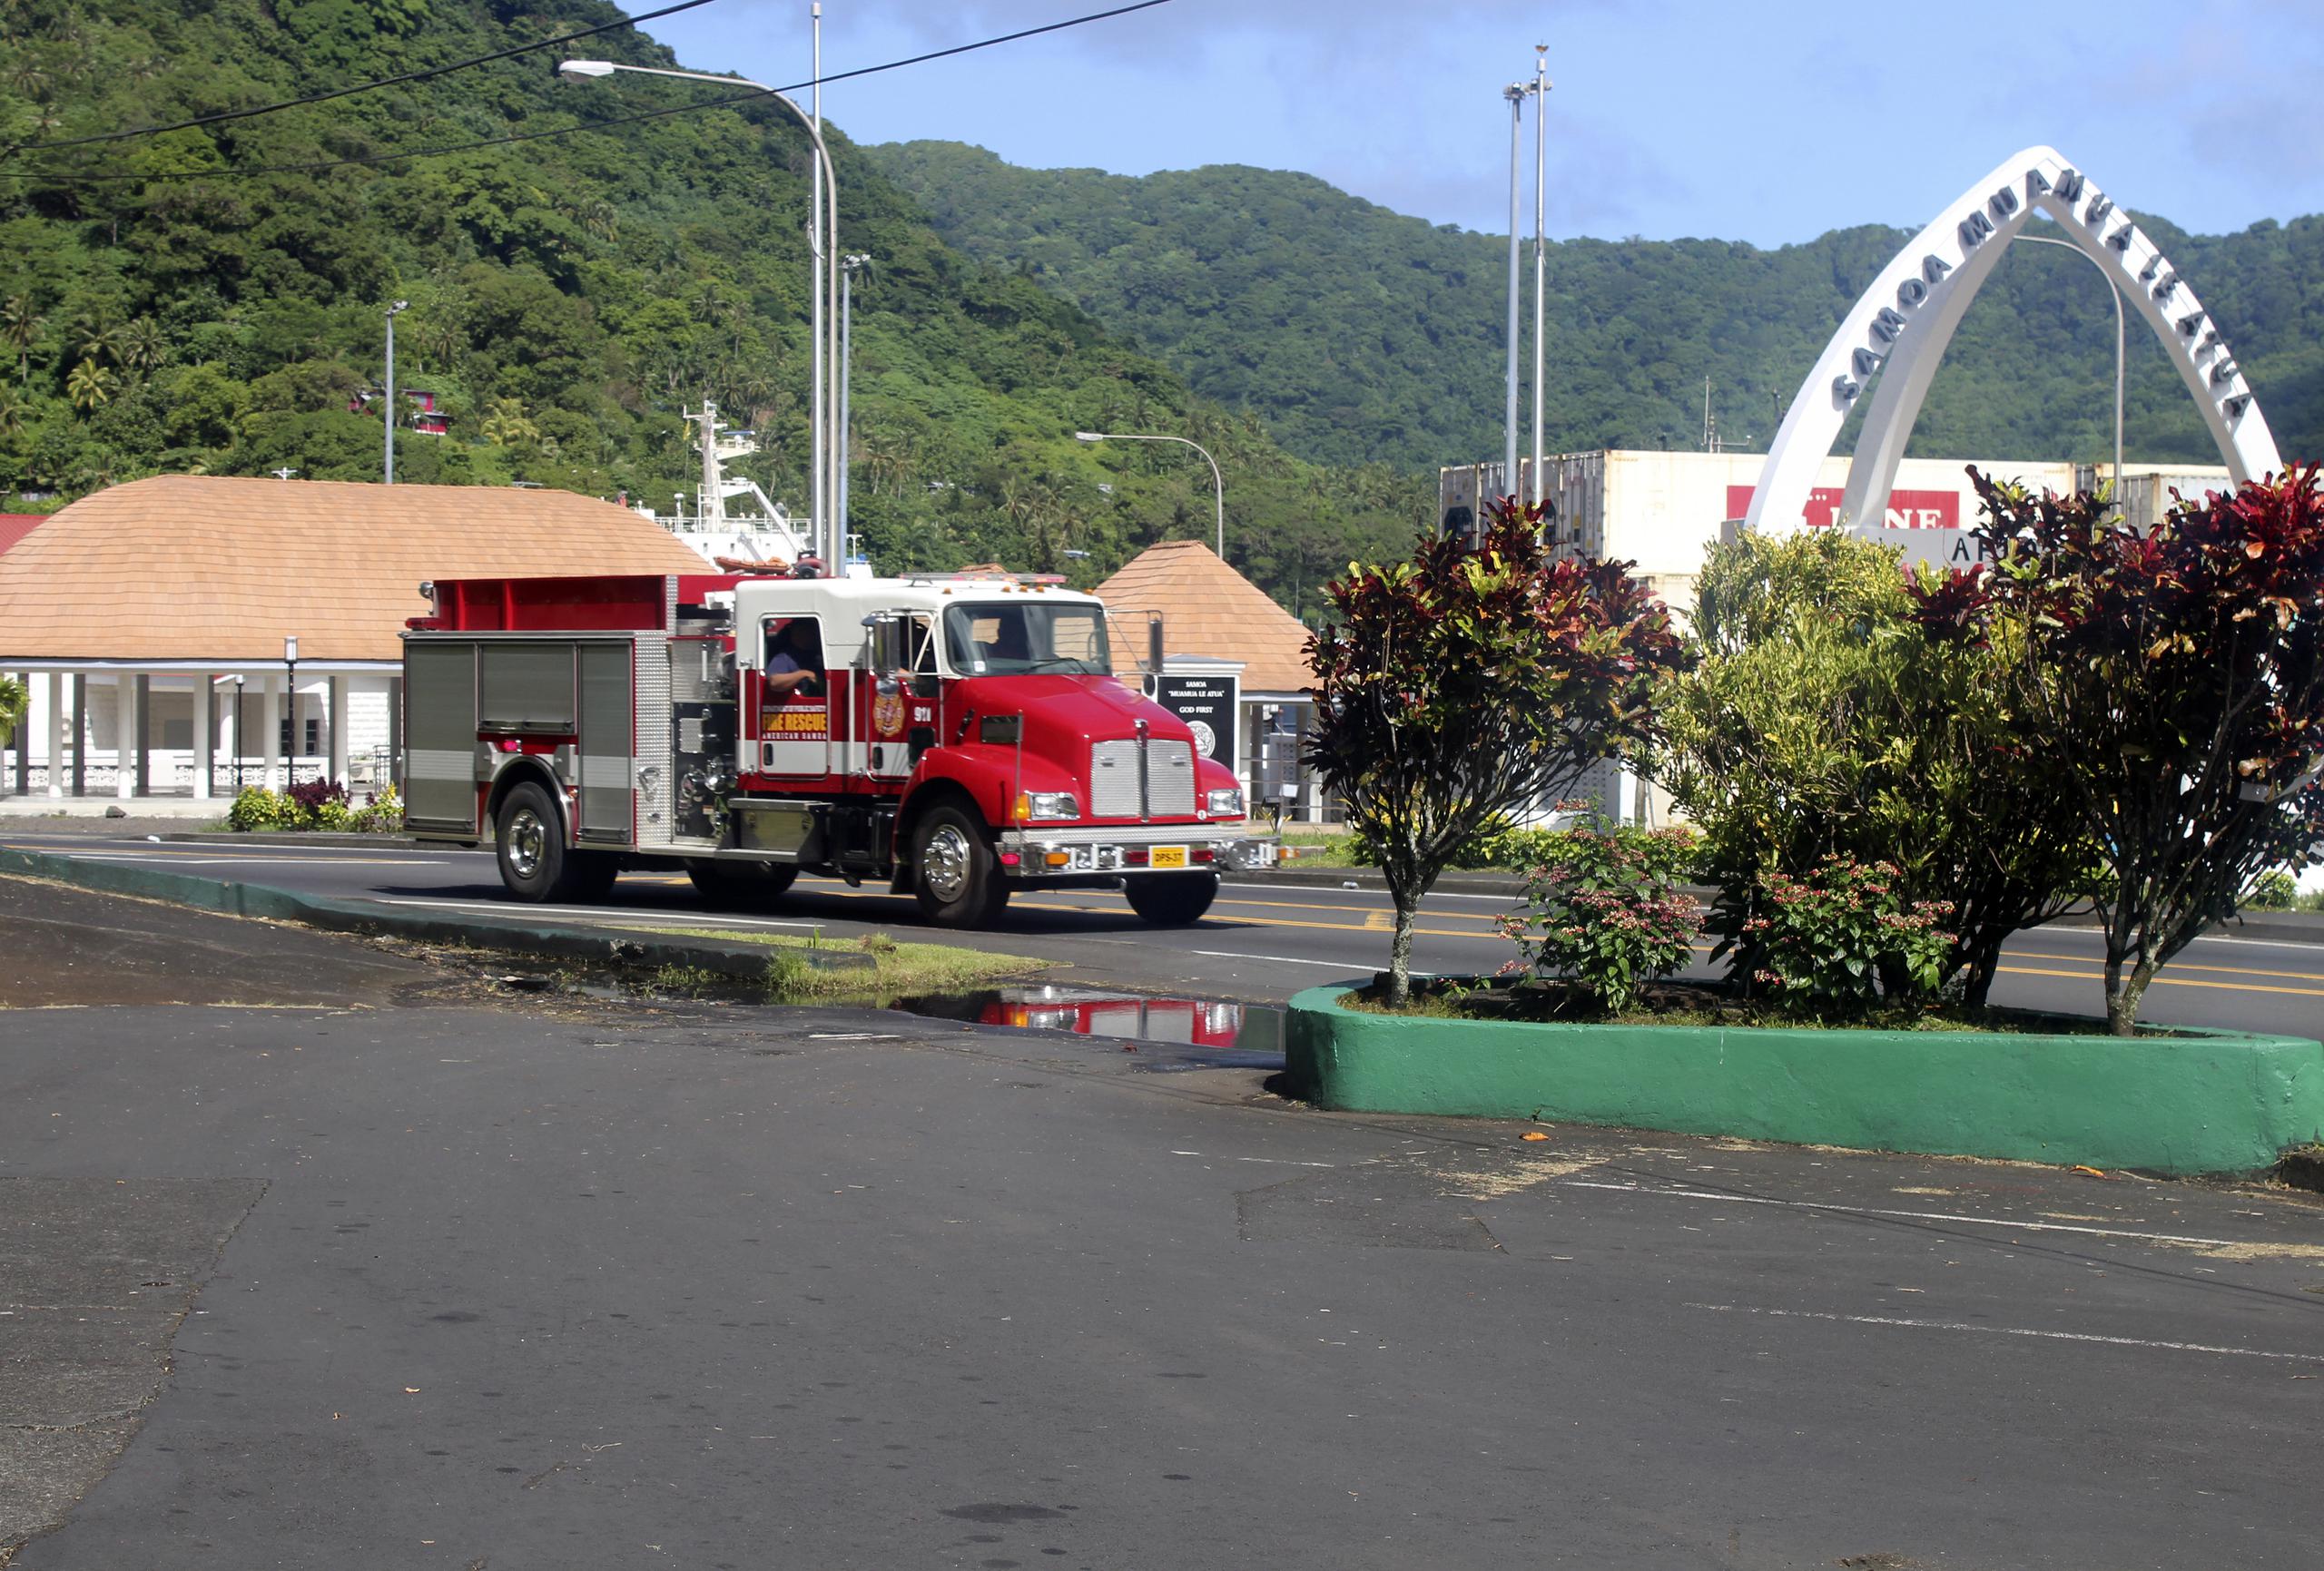 Unas seis viviendas en Maui resultaron fuertemente dañadas o destruidas, dijo la alcaldía del condado Maui Michael Victorino el lunes por la noche. Llamó a los residentes a mantenerse alertas ante el peligro de ludes.